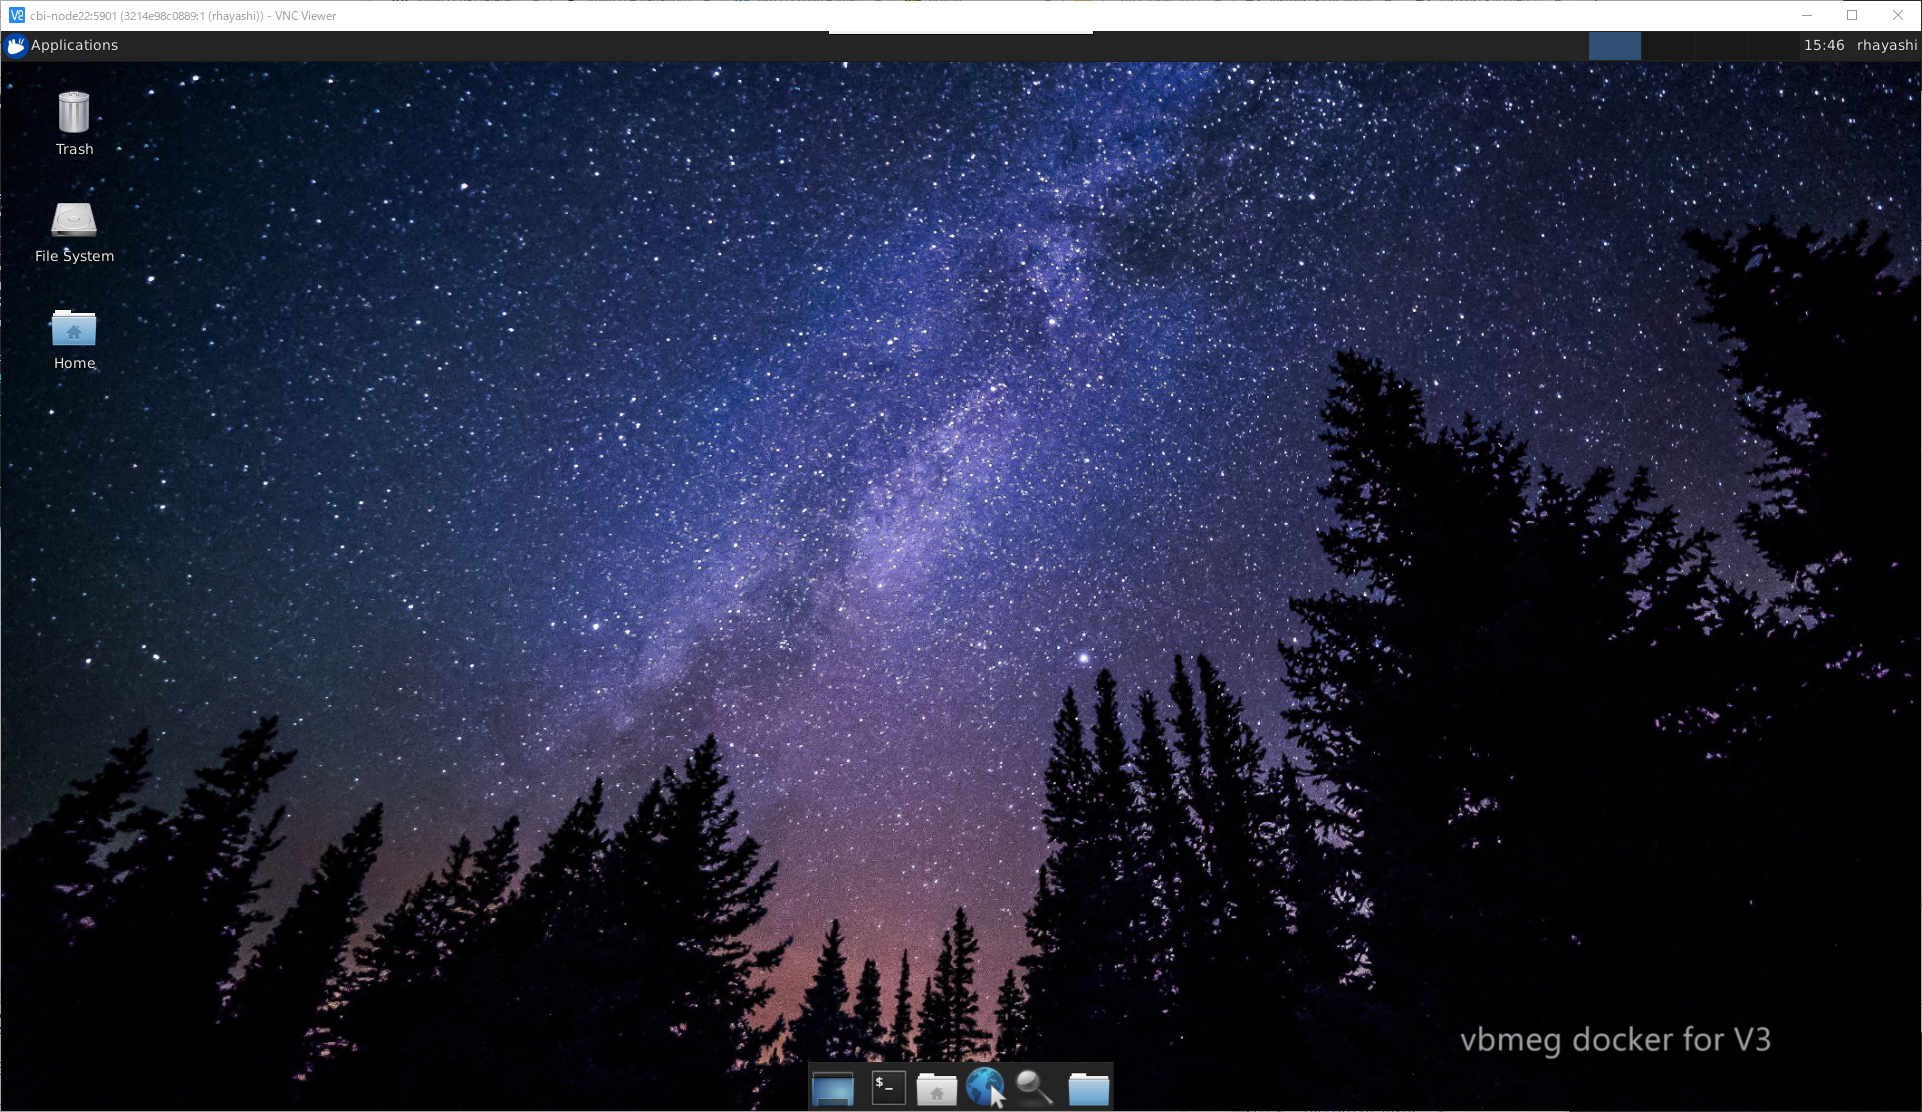 xfce4 desktop